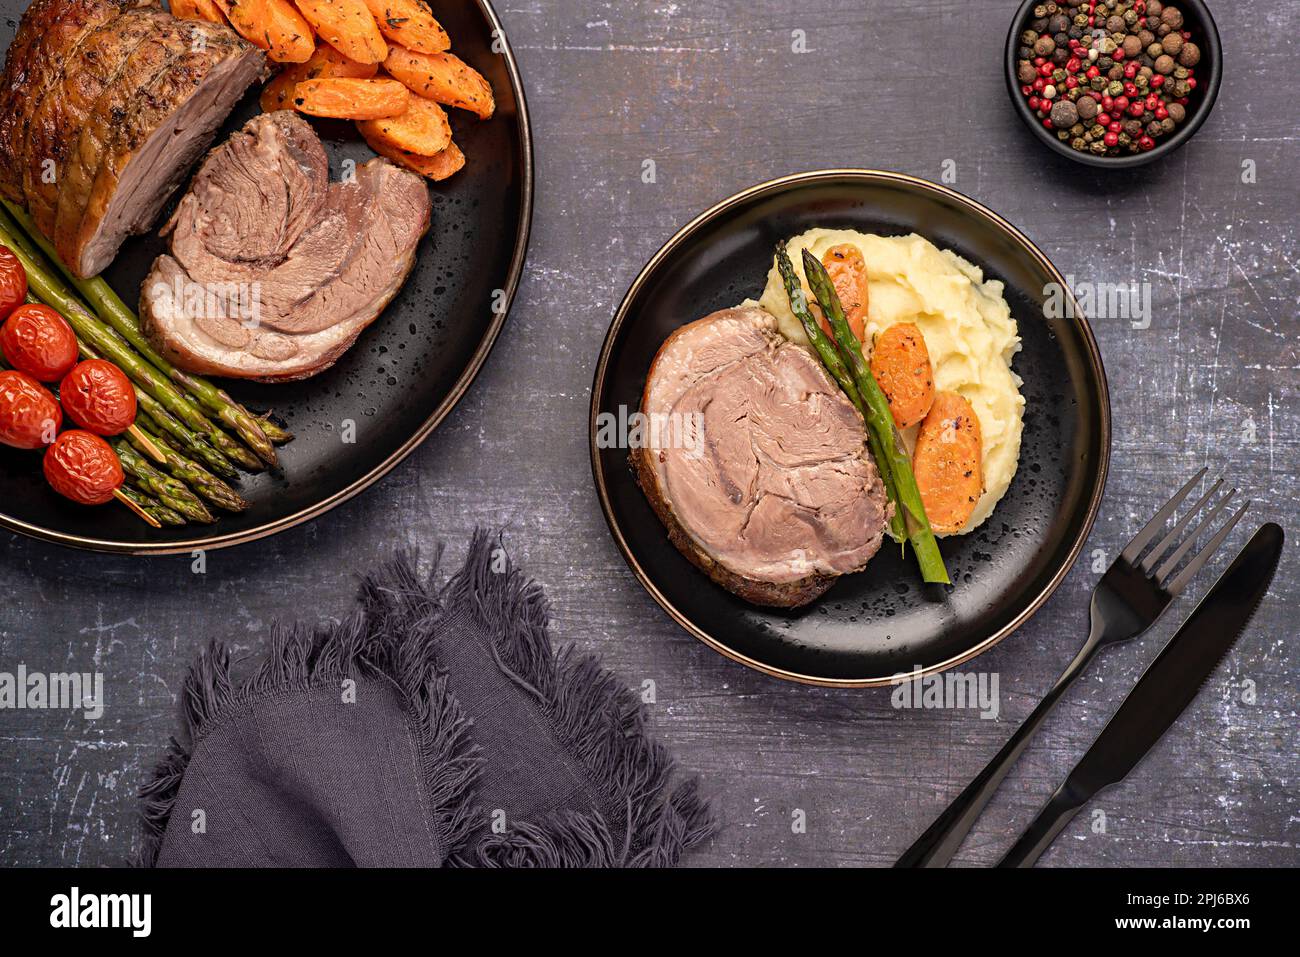 Fotografia alimentare di agnello arrosto, carota, asparagi, pomodoro, condimento, pepe Foto Stock